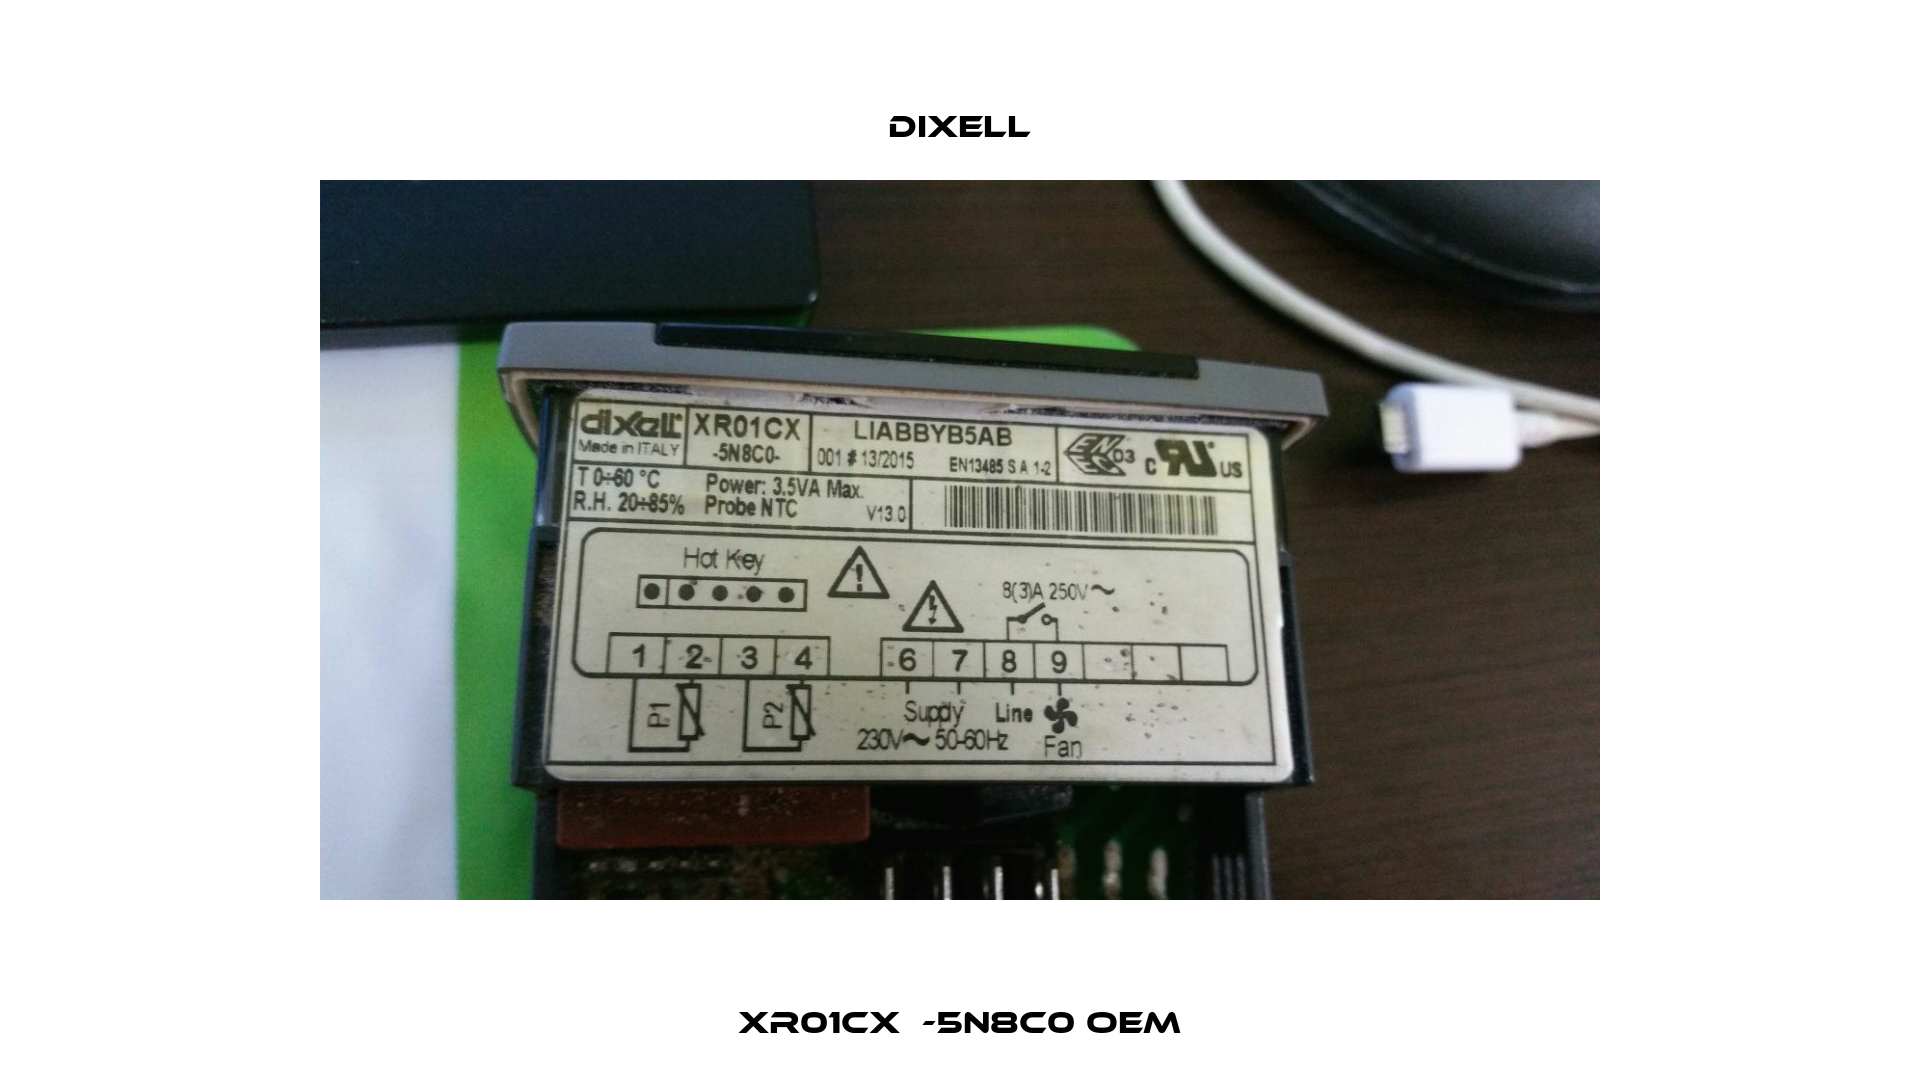 XR01CX  -5N8C0 oem Dixell